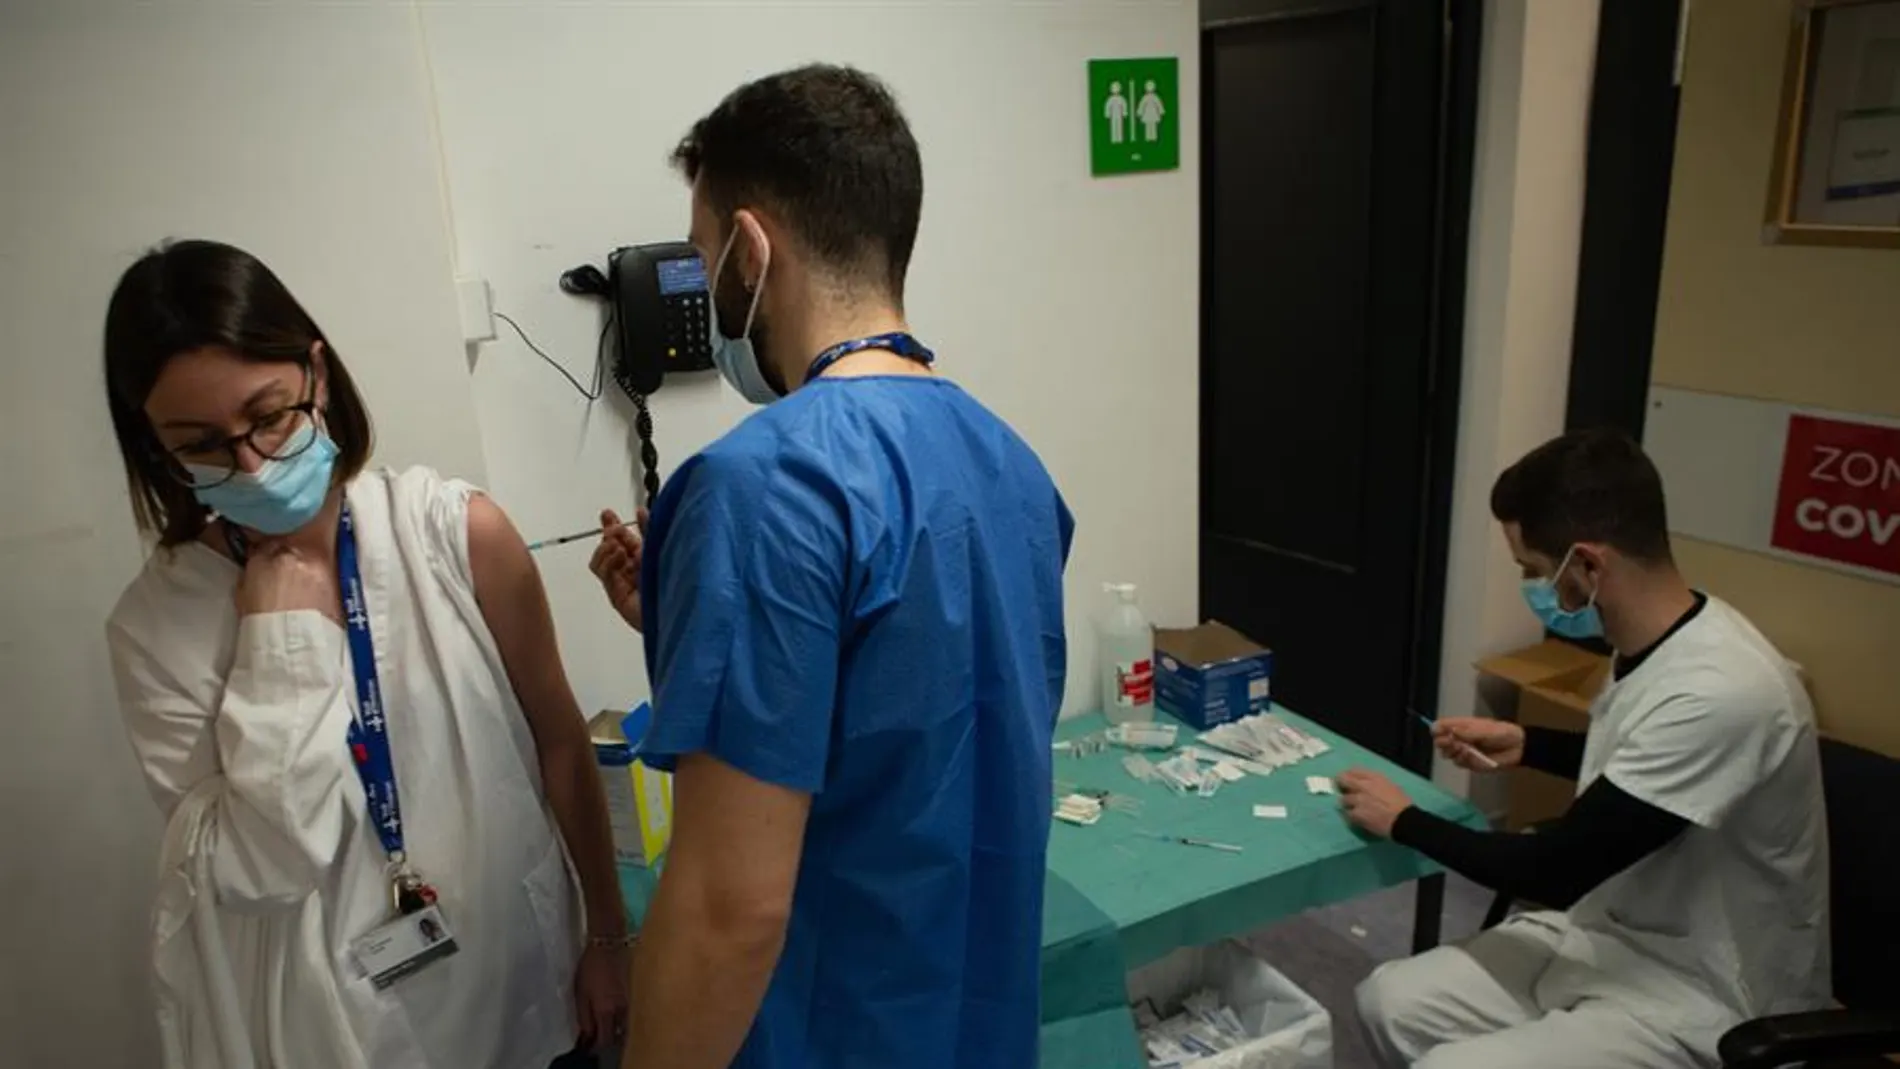 Profesionales sanitarios preparan y administran la vacuna de covid-19 a sus compañeros en el Hospital Vall d'Hebrón de Barcelona.